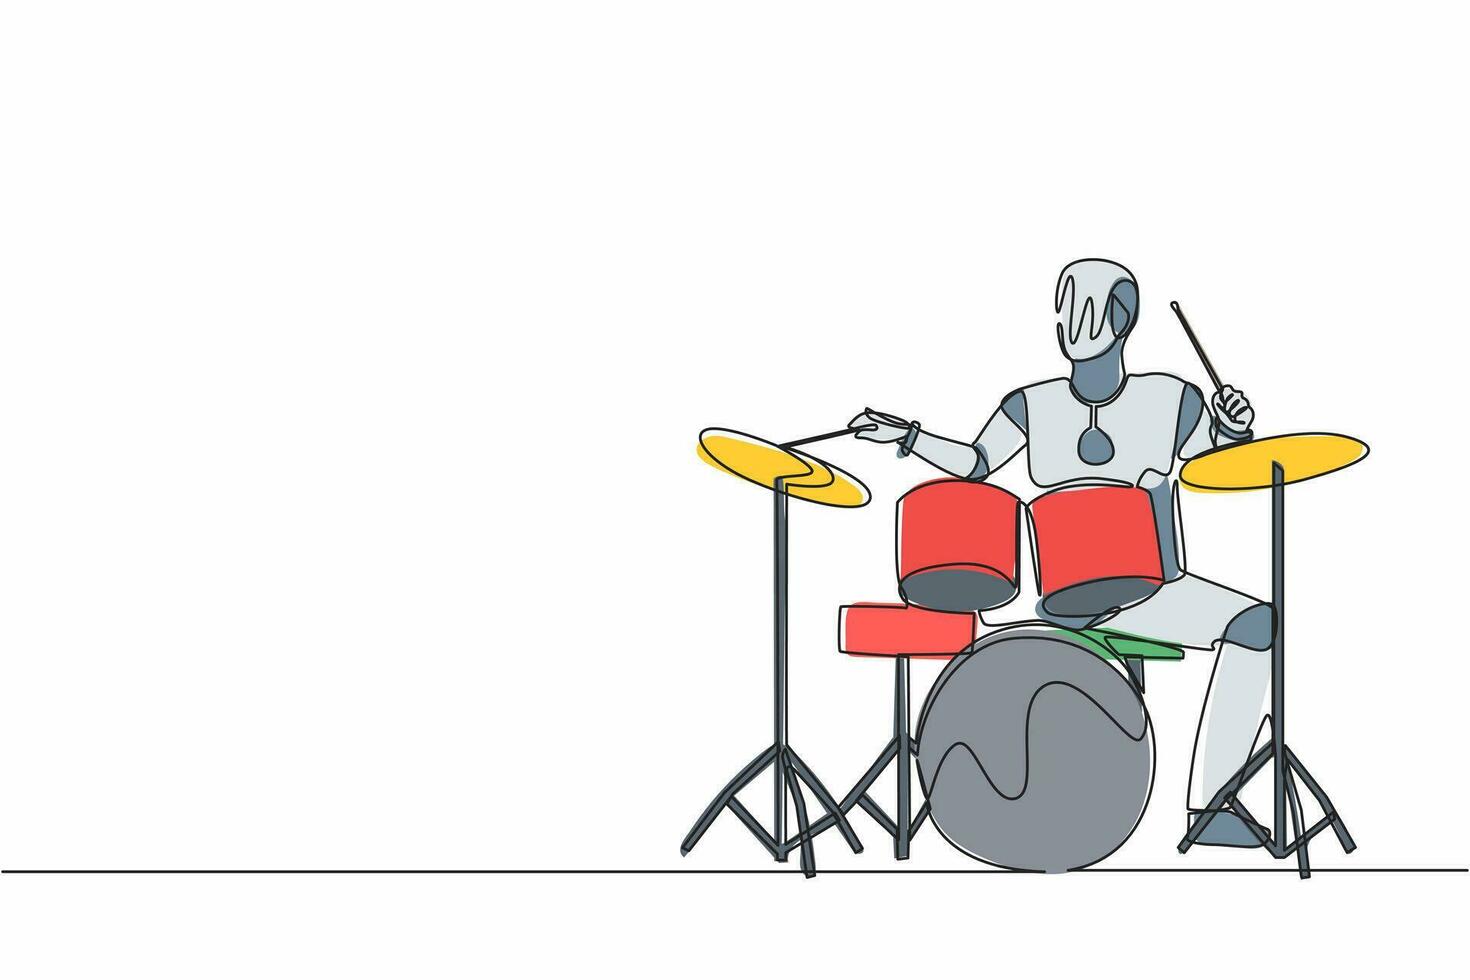 robot de dibujo de una sola línea tocando un instrumento de batería en un concierto de música pop. desarrollo tecnológico futuro. Inteligencia artificial y aprendizaje automático. ilustración de vector de diseño de dibujo de línea continua